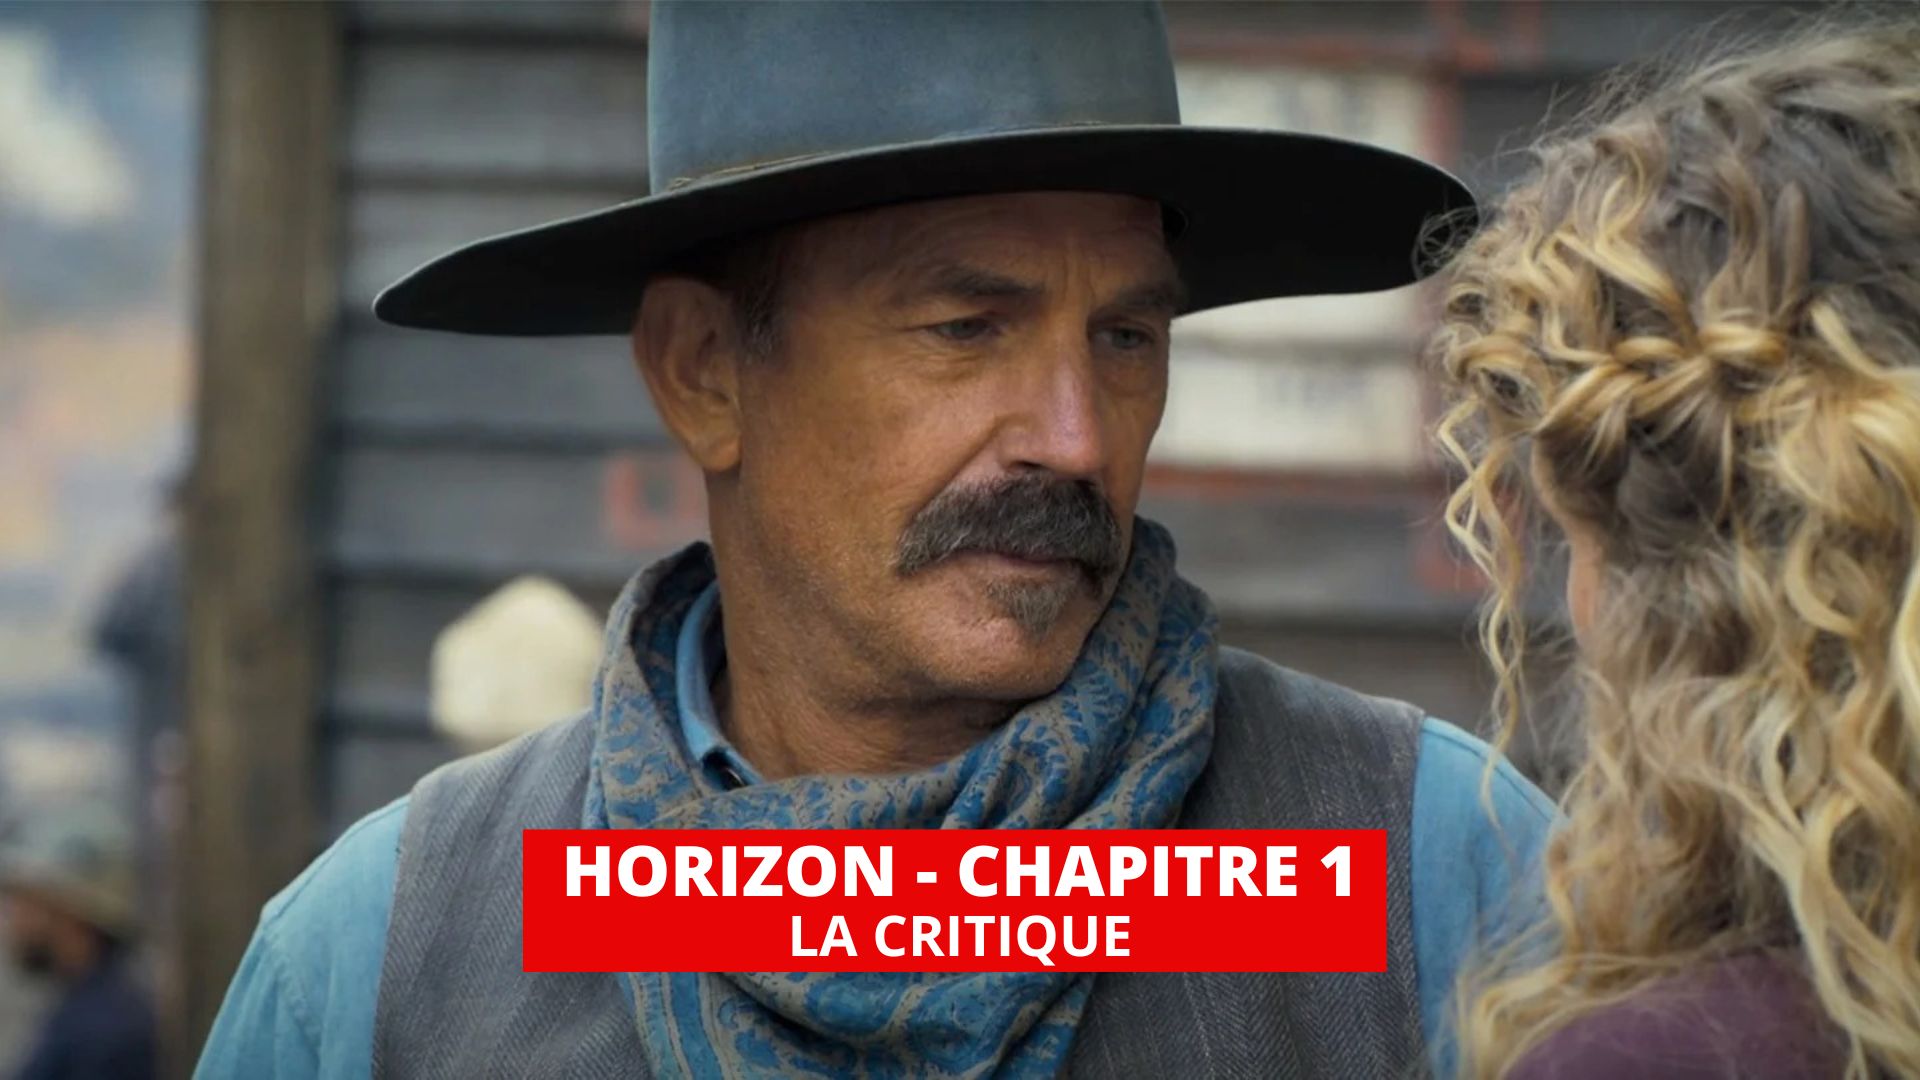 Horizon Une saga américaine - Chapitre 1 : Kevin Costner se perd dans son western